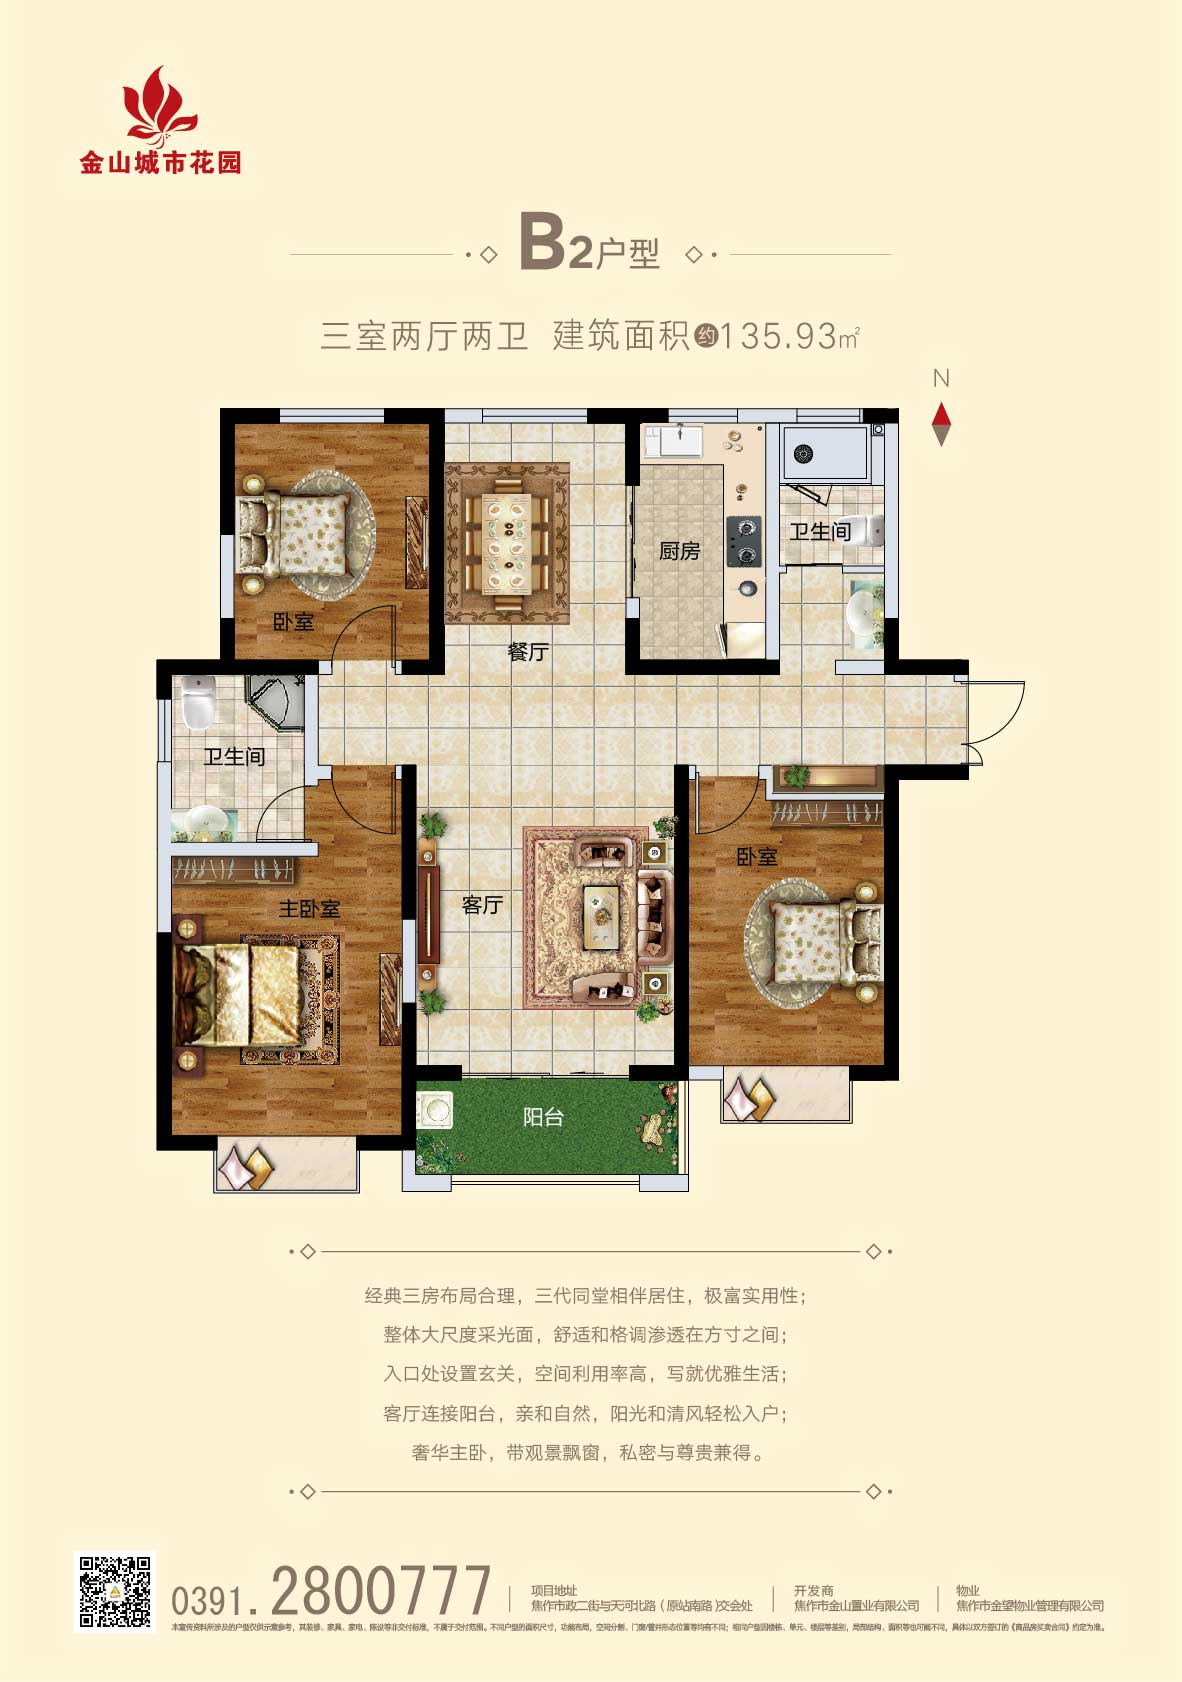 三阳三室房子户型图图片